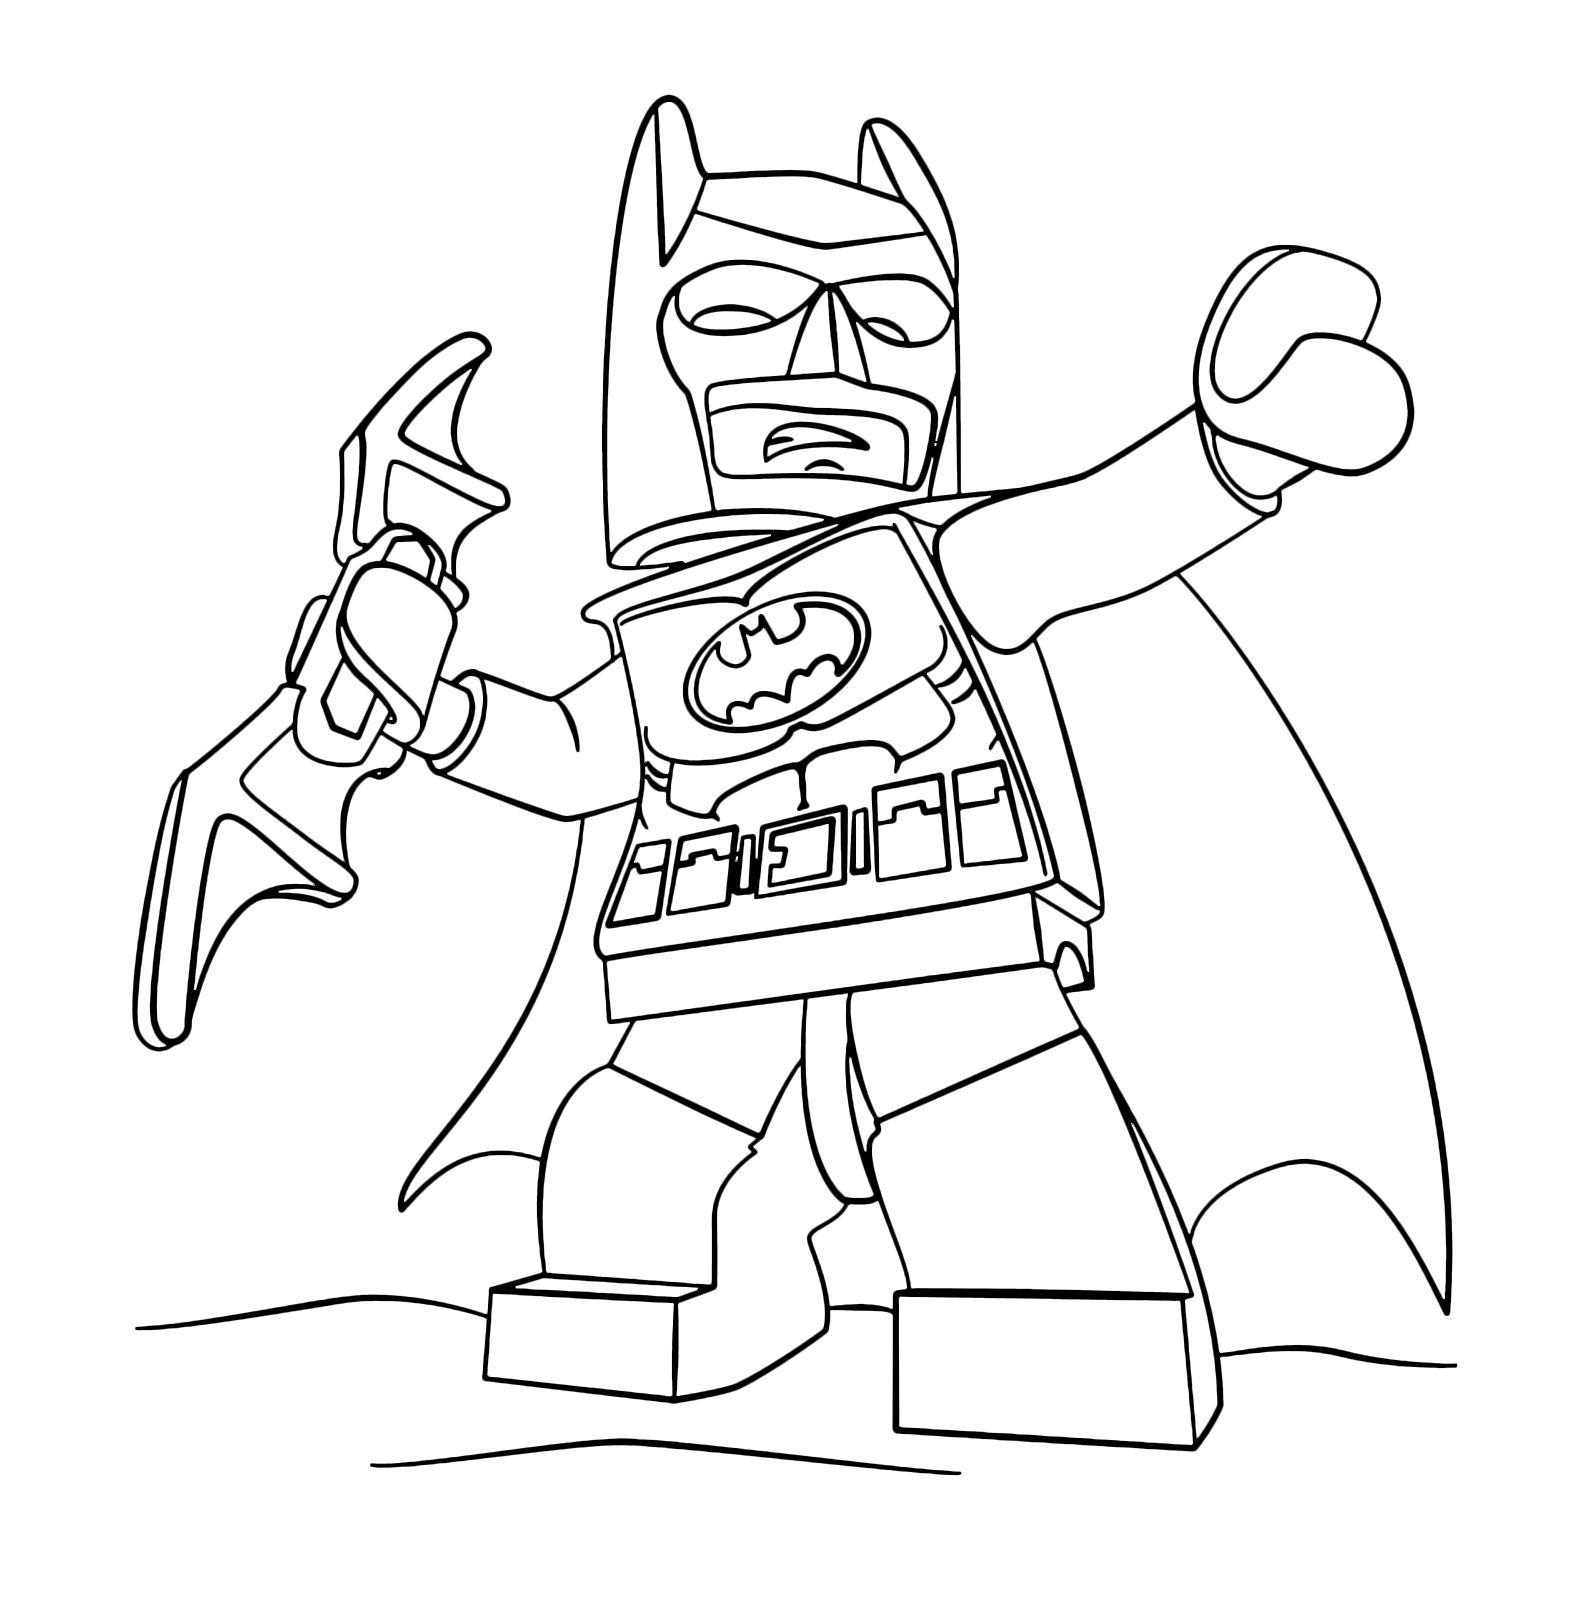 The LEGO Batman Movie - Batman is launching a Batarang